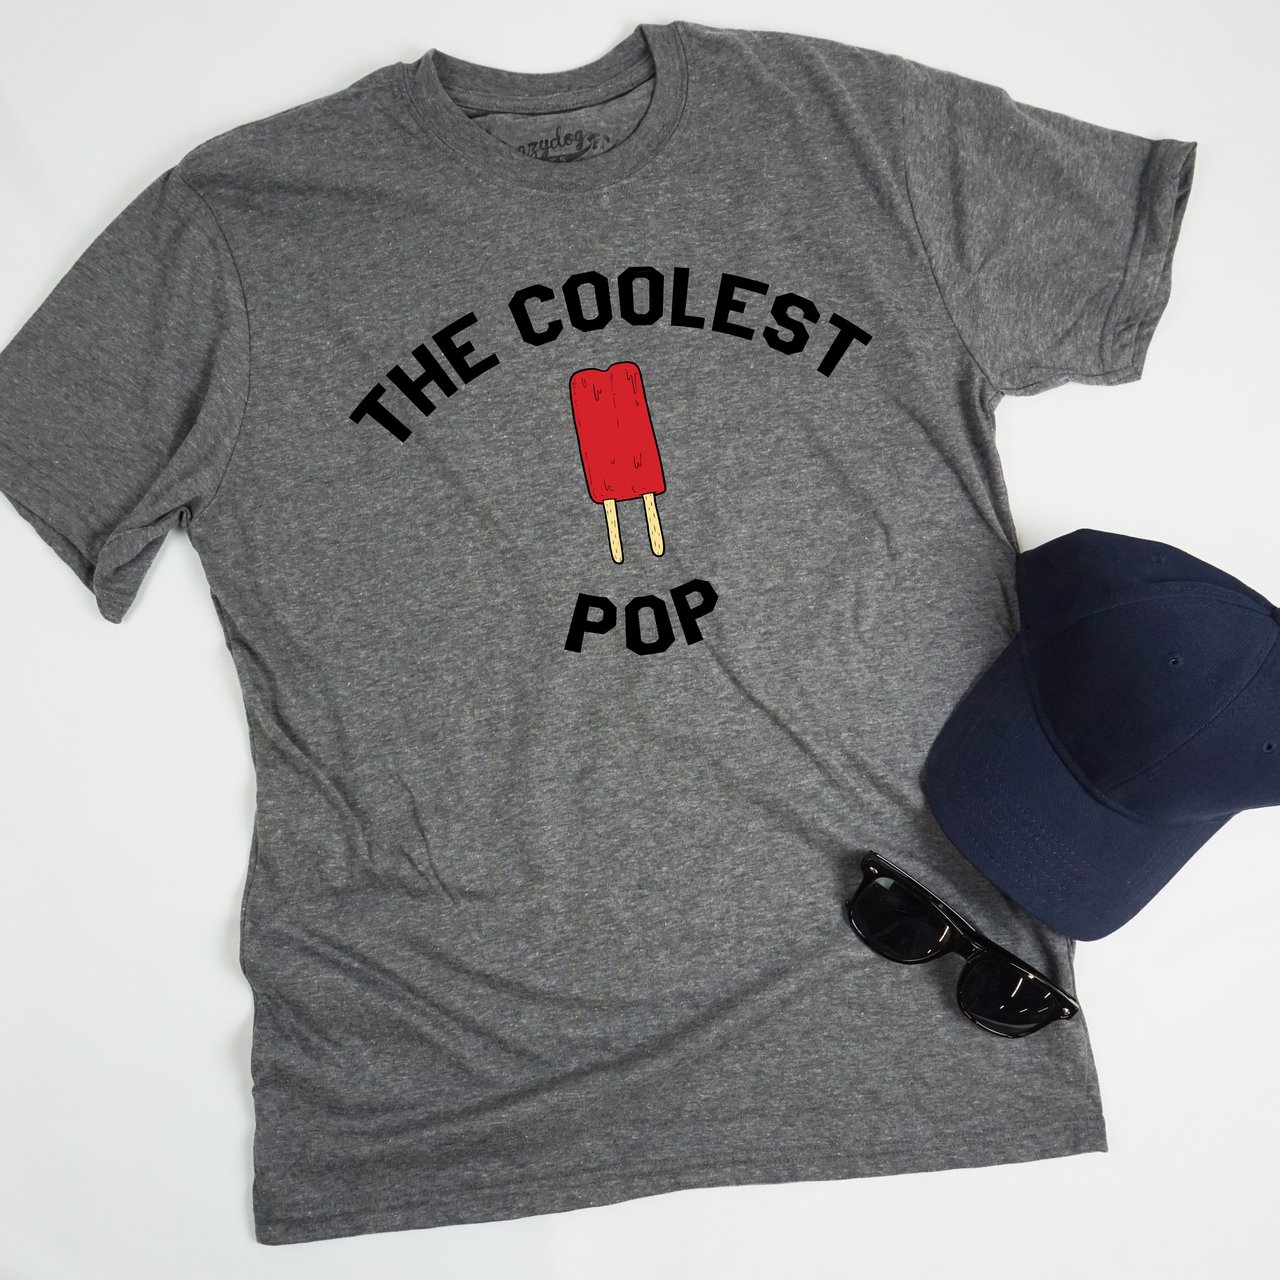 Coolest Pop T-shirt » Petagadget